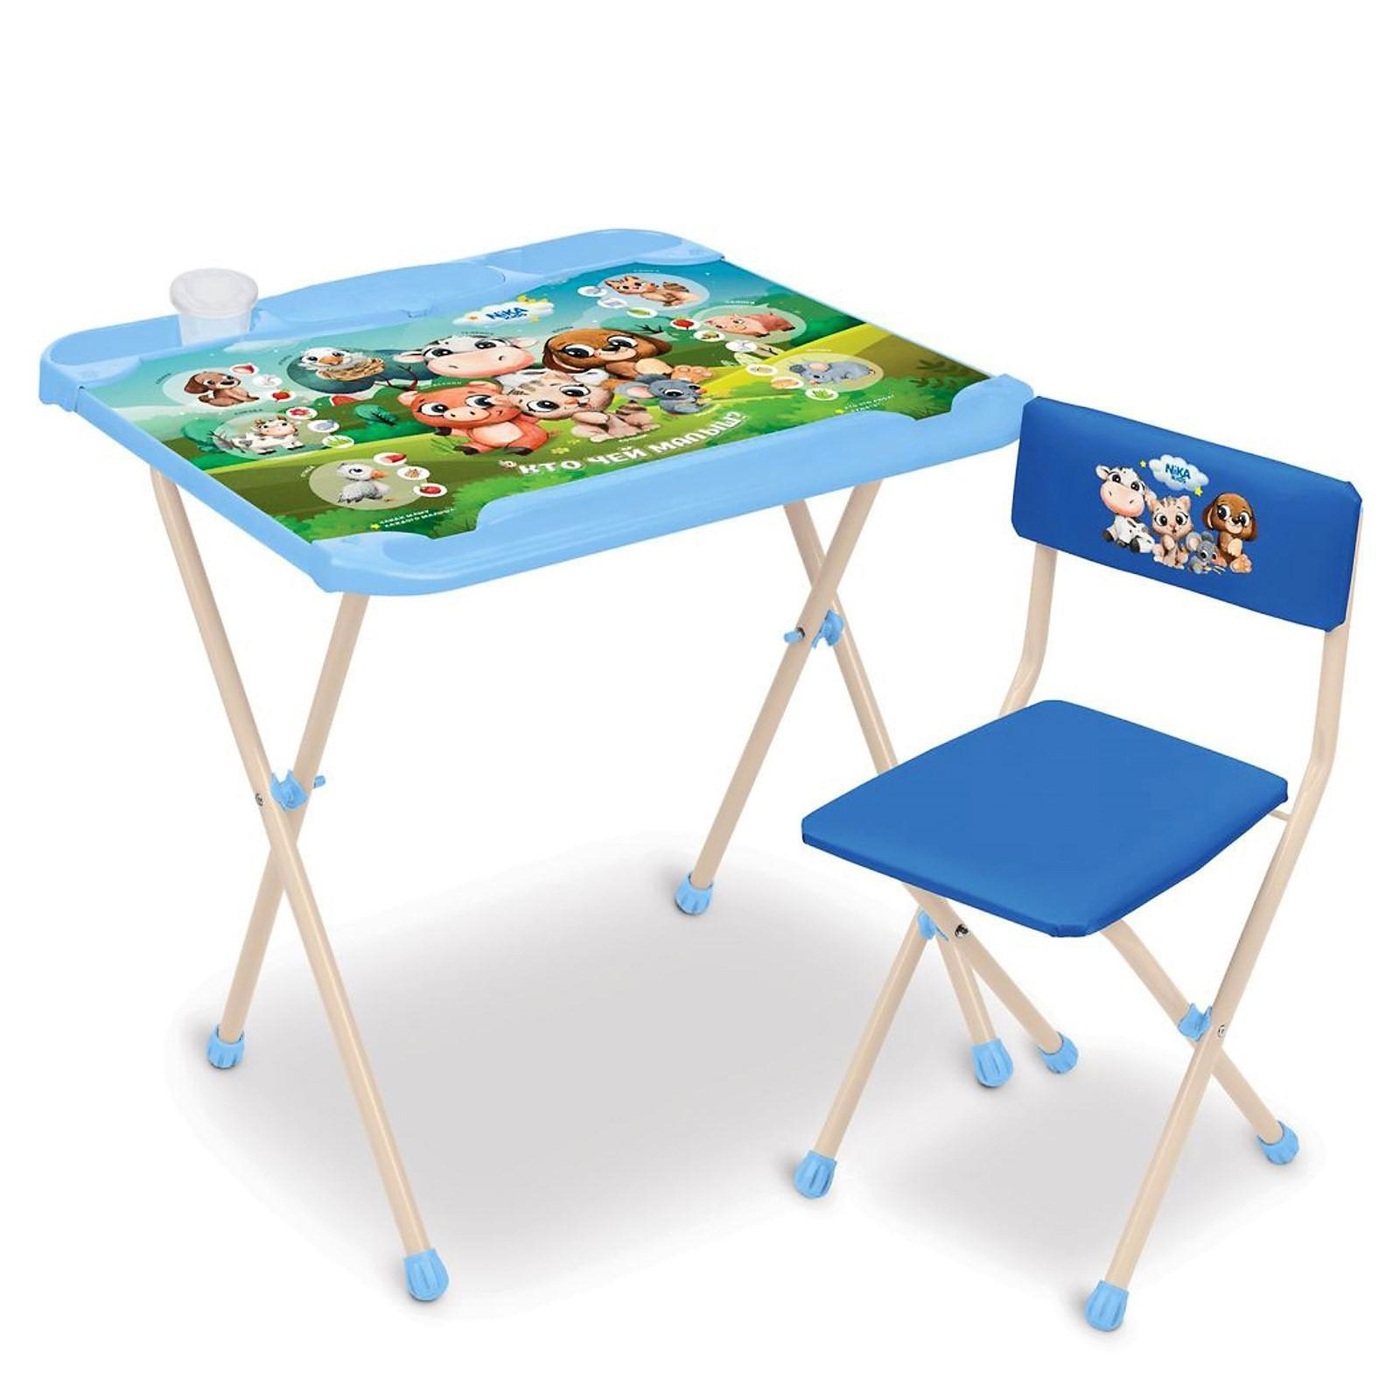 Детские столы для детей от 3 лет